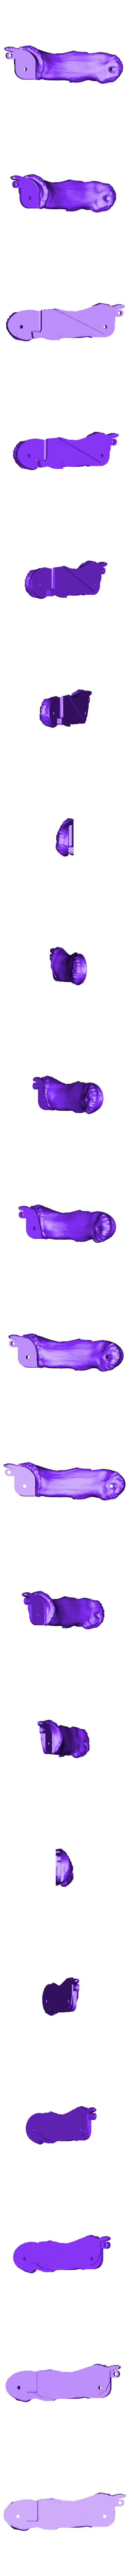 3 knuc bone  mid2.stl Файл STL Обновленный костяной палец・Модель для загрузки и печати в формате 3D, LittleTup